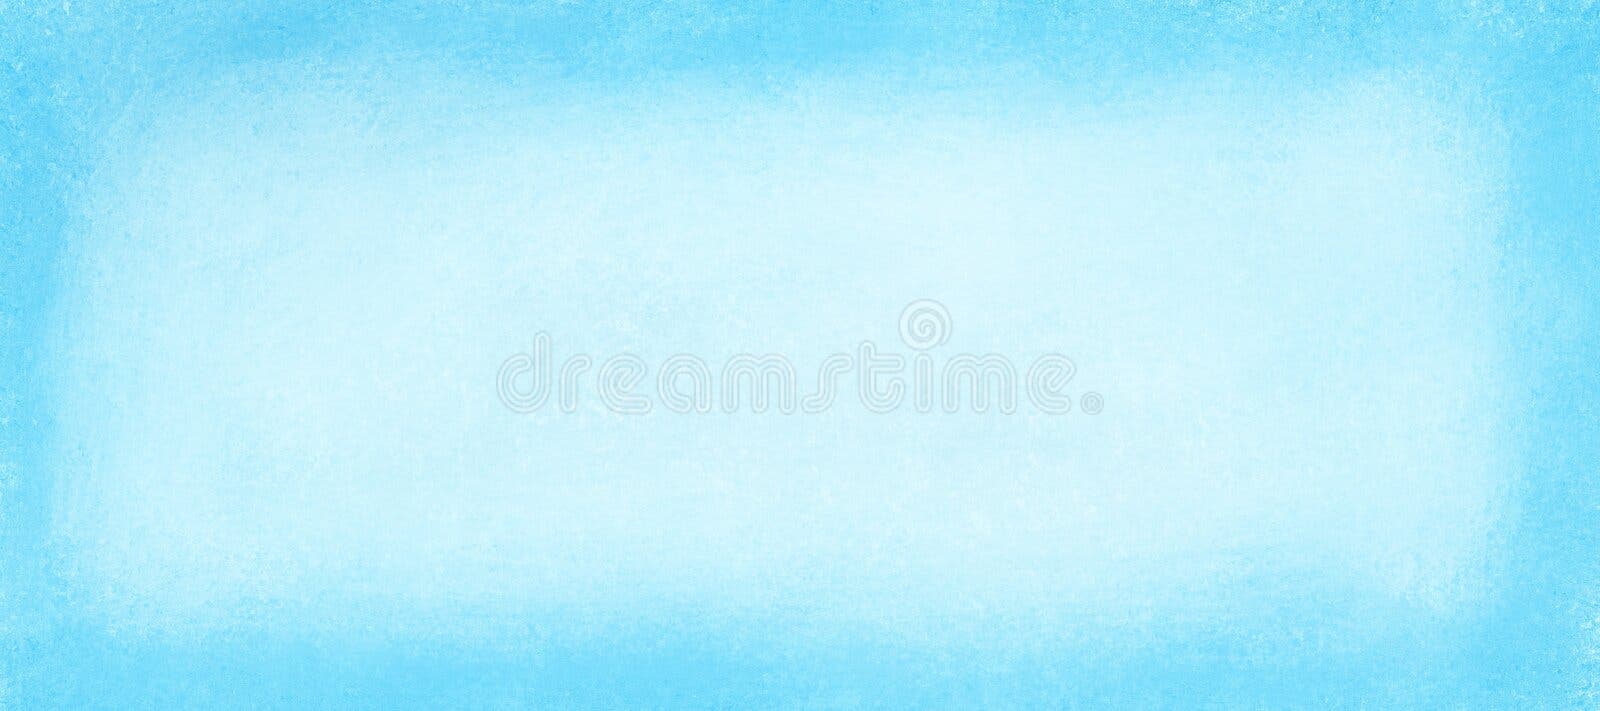 Fondo Azul Cielo Pastel Con Textura Vintage Antigua Y Diseño De Borrón De  Borde Abstracto De Papel Azul De Pascua O Primavera En C Foto de archivo -  Imagen de elegante, enmascarado: